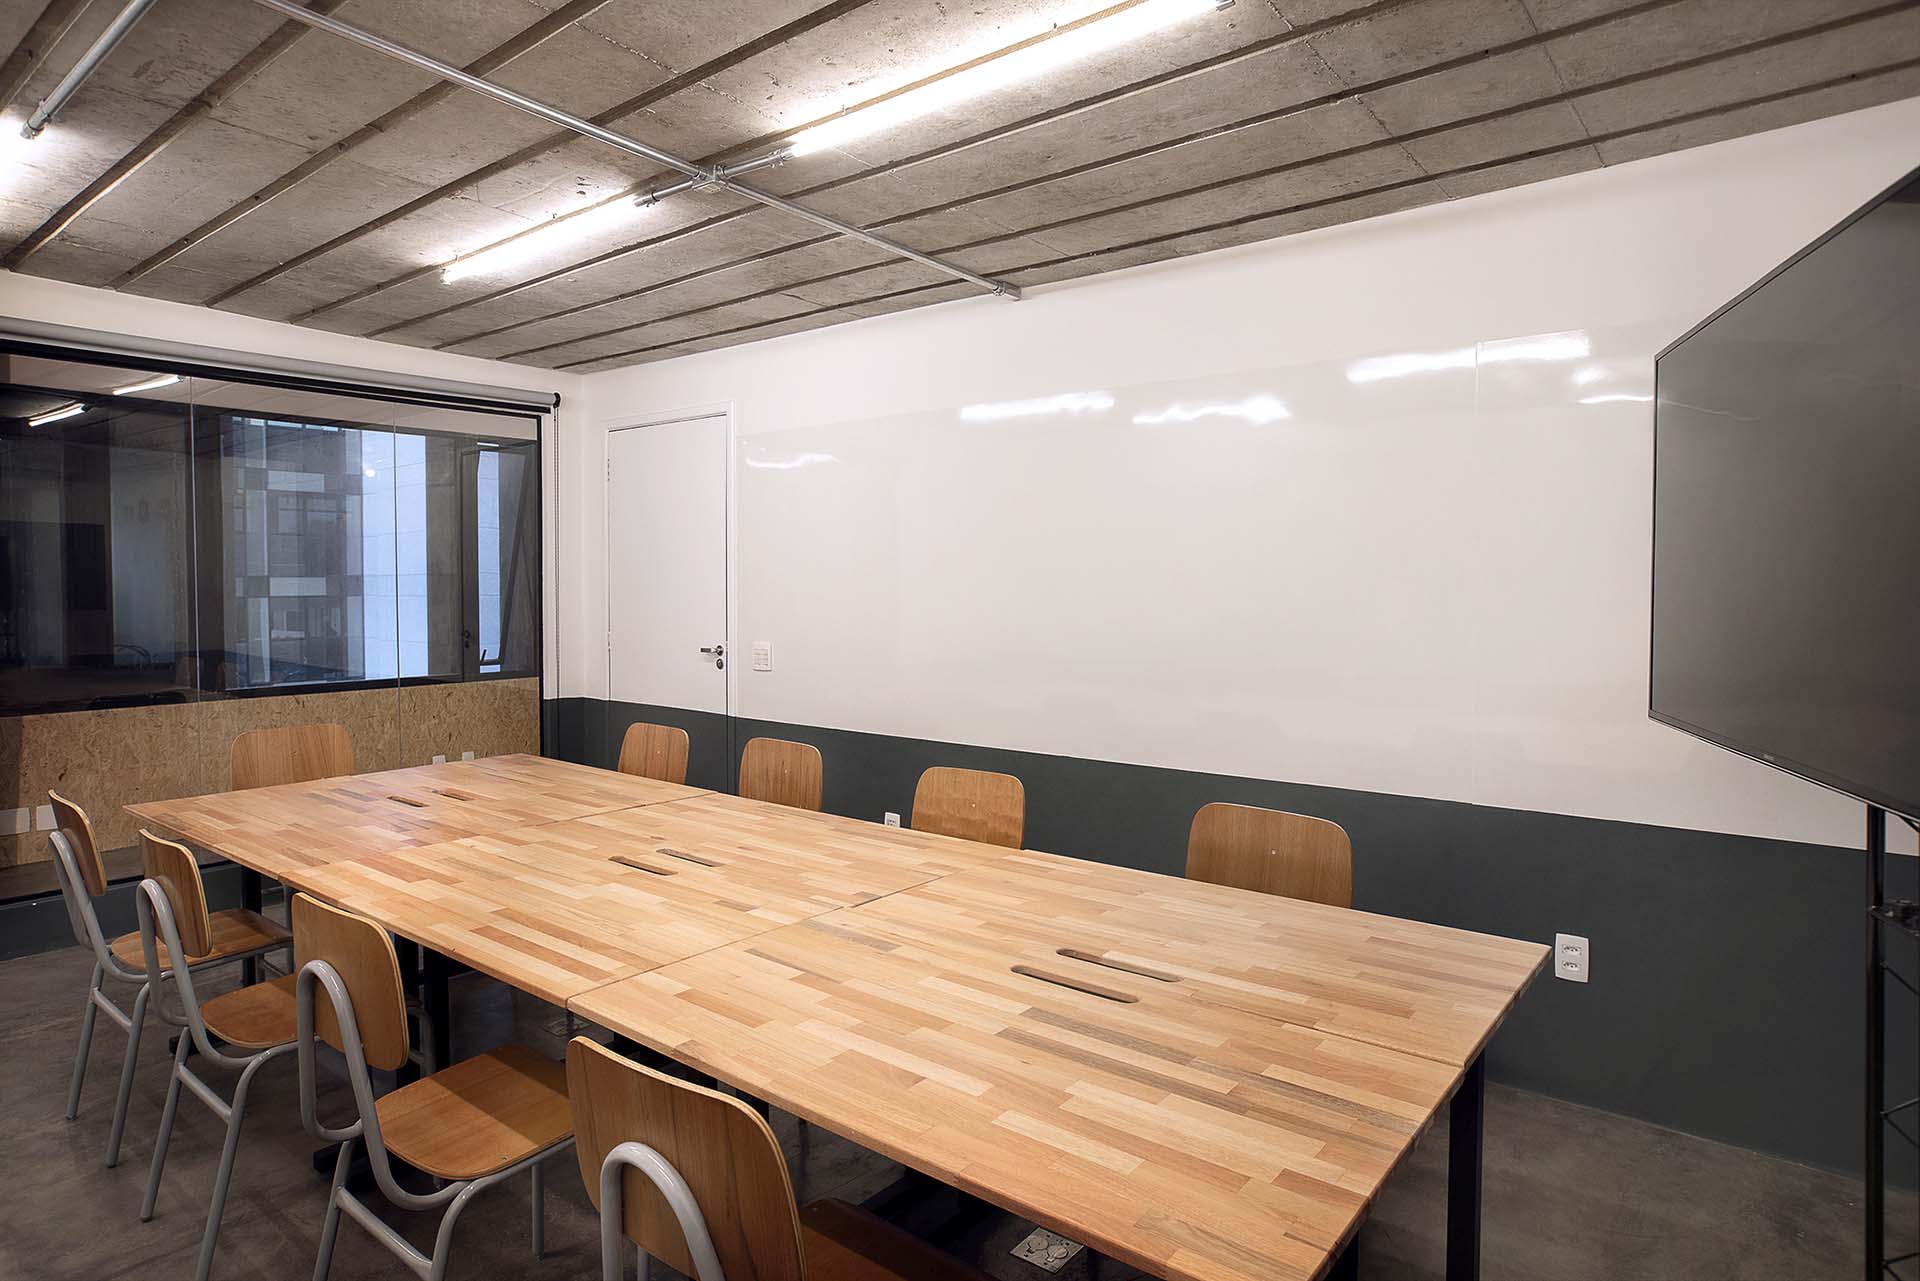 Sala de reuniões para até 14 pessoas na Berrini com mesas flexíveis e iluminação natural